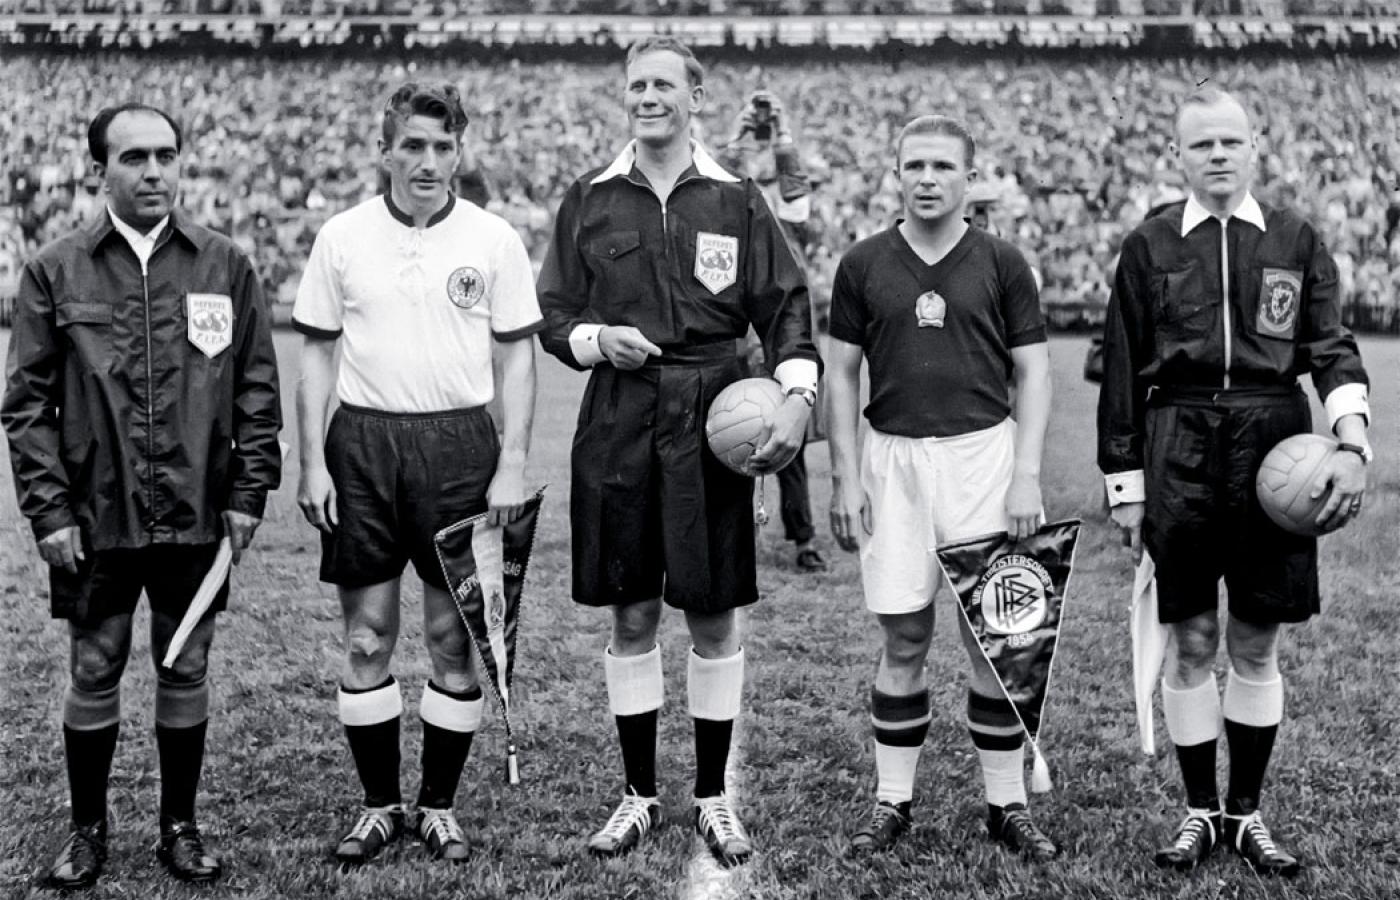 Rozpoczęcie meczu finałowego Niemcy-Węgry w Bernie, 4 lipca 1954 r. Z proporczykami kapitanowie drużyn: Fritz Walter (z lewej) i Ferenc Puskás.